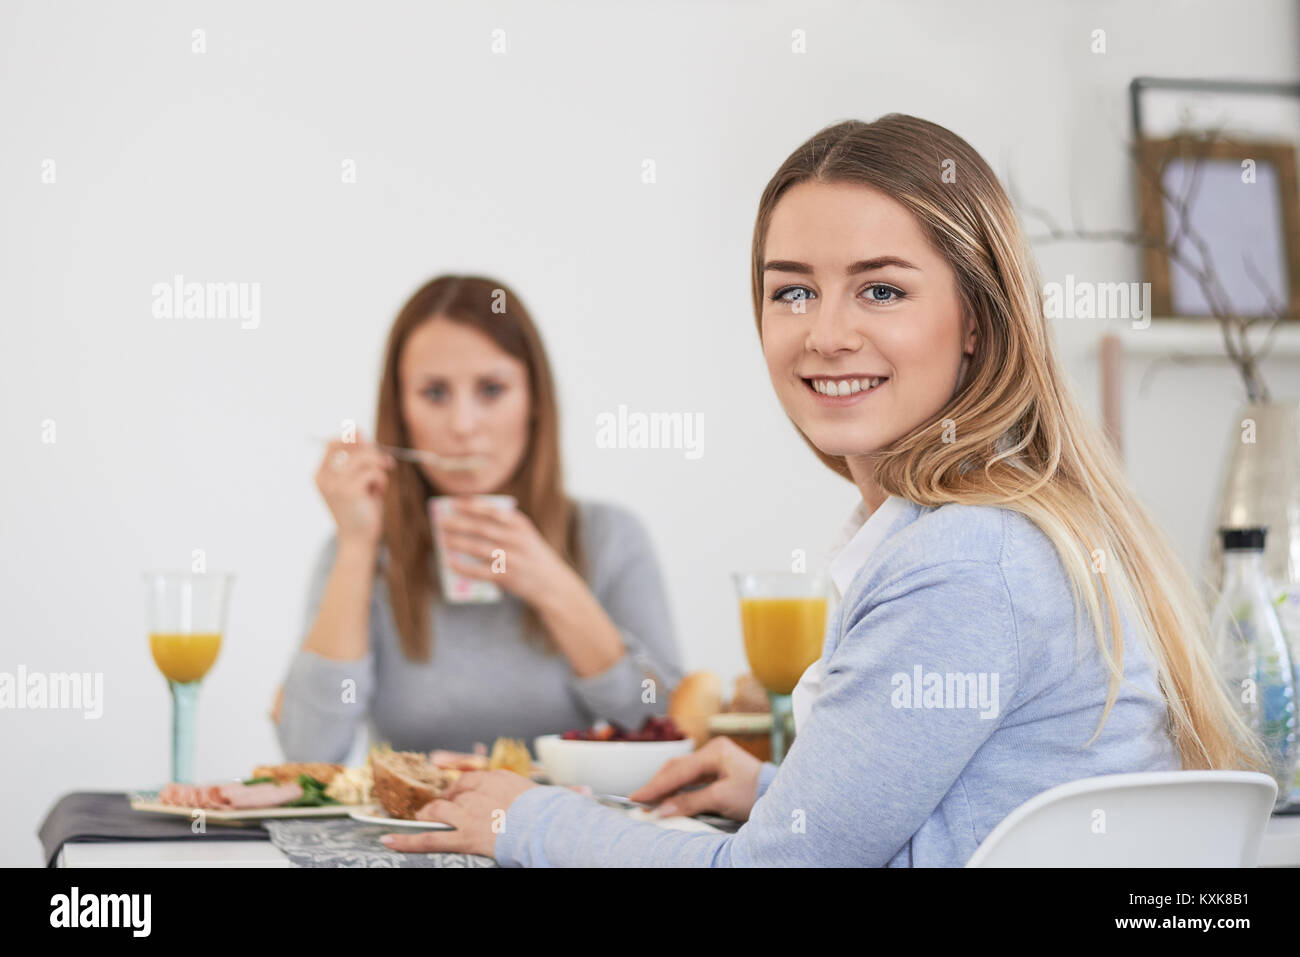 Jolie jeune femme d'adolescent avec un sourire plein de vivacité assis à une table avec sa meilleure amie prendre le petit-déjeuner et en tournant pour sourire à l'appareil photo Banque D'Images